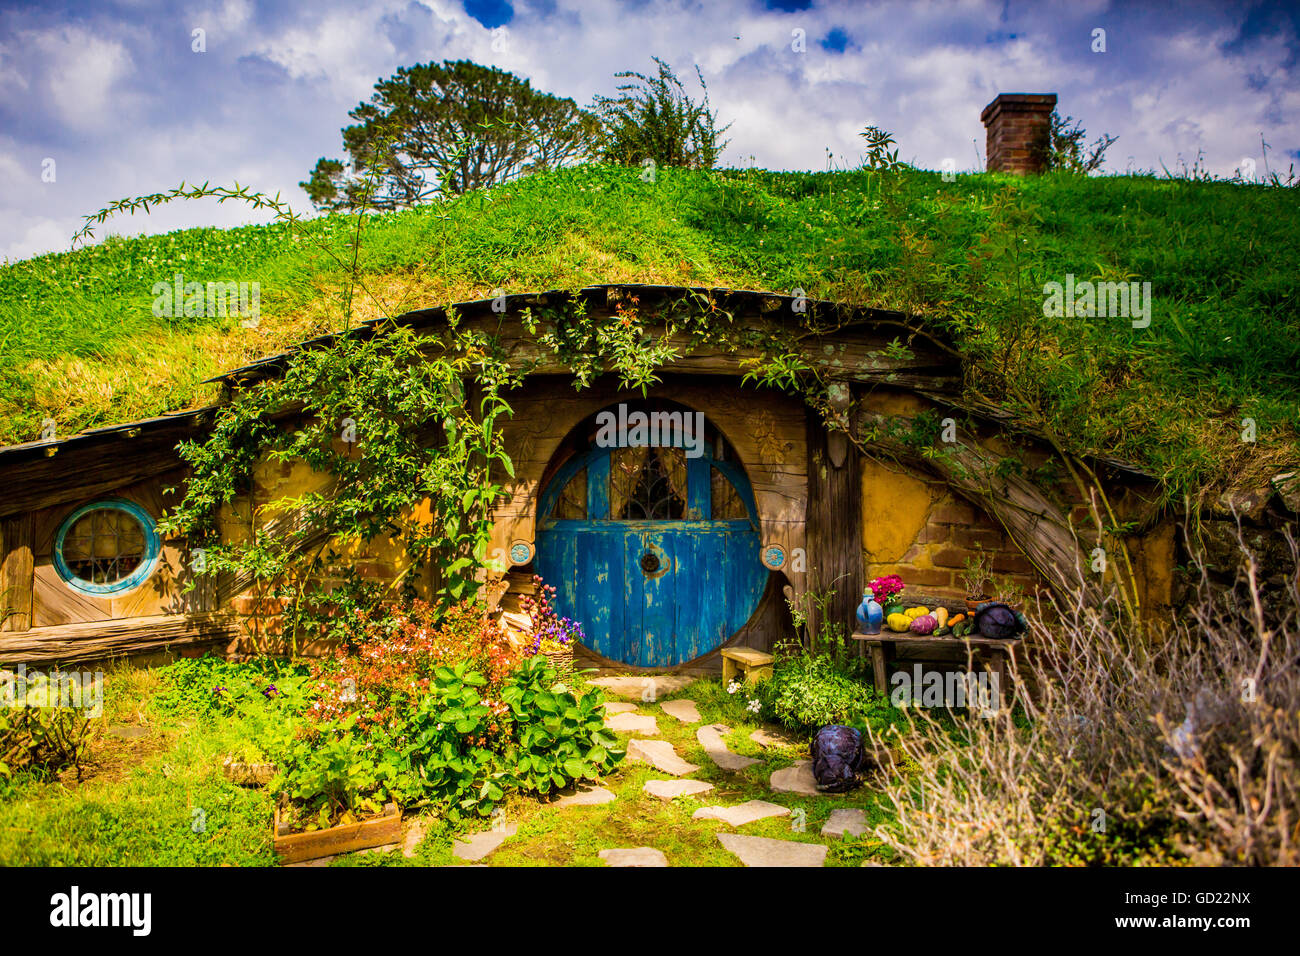 Puerta frontal de un hobbit House, Hobbiton, Isla del Norte, Nueva Zelanda, el Pacífico Foto de stock